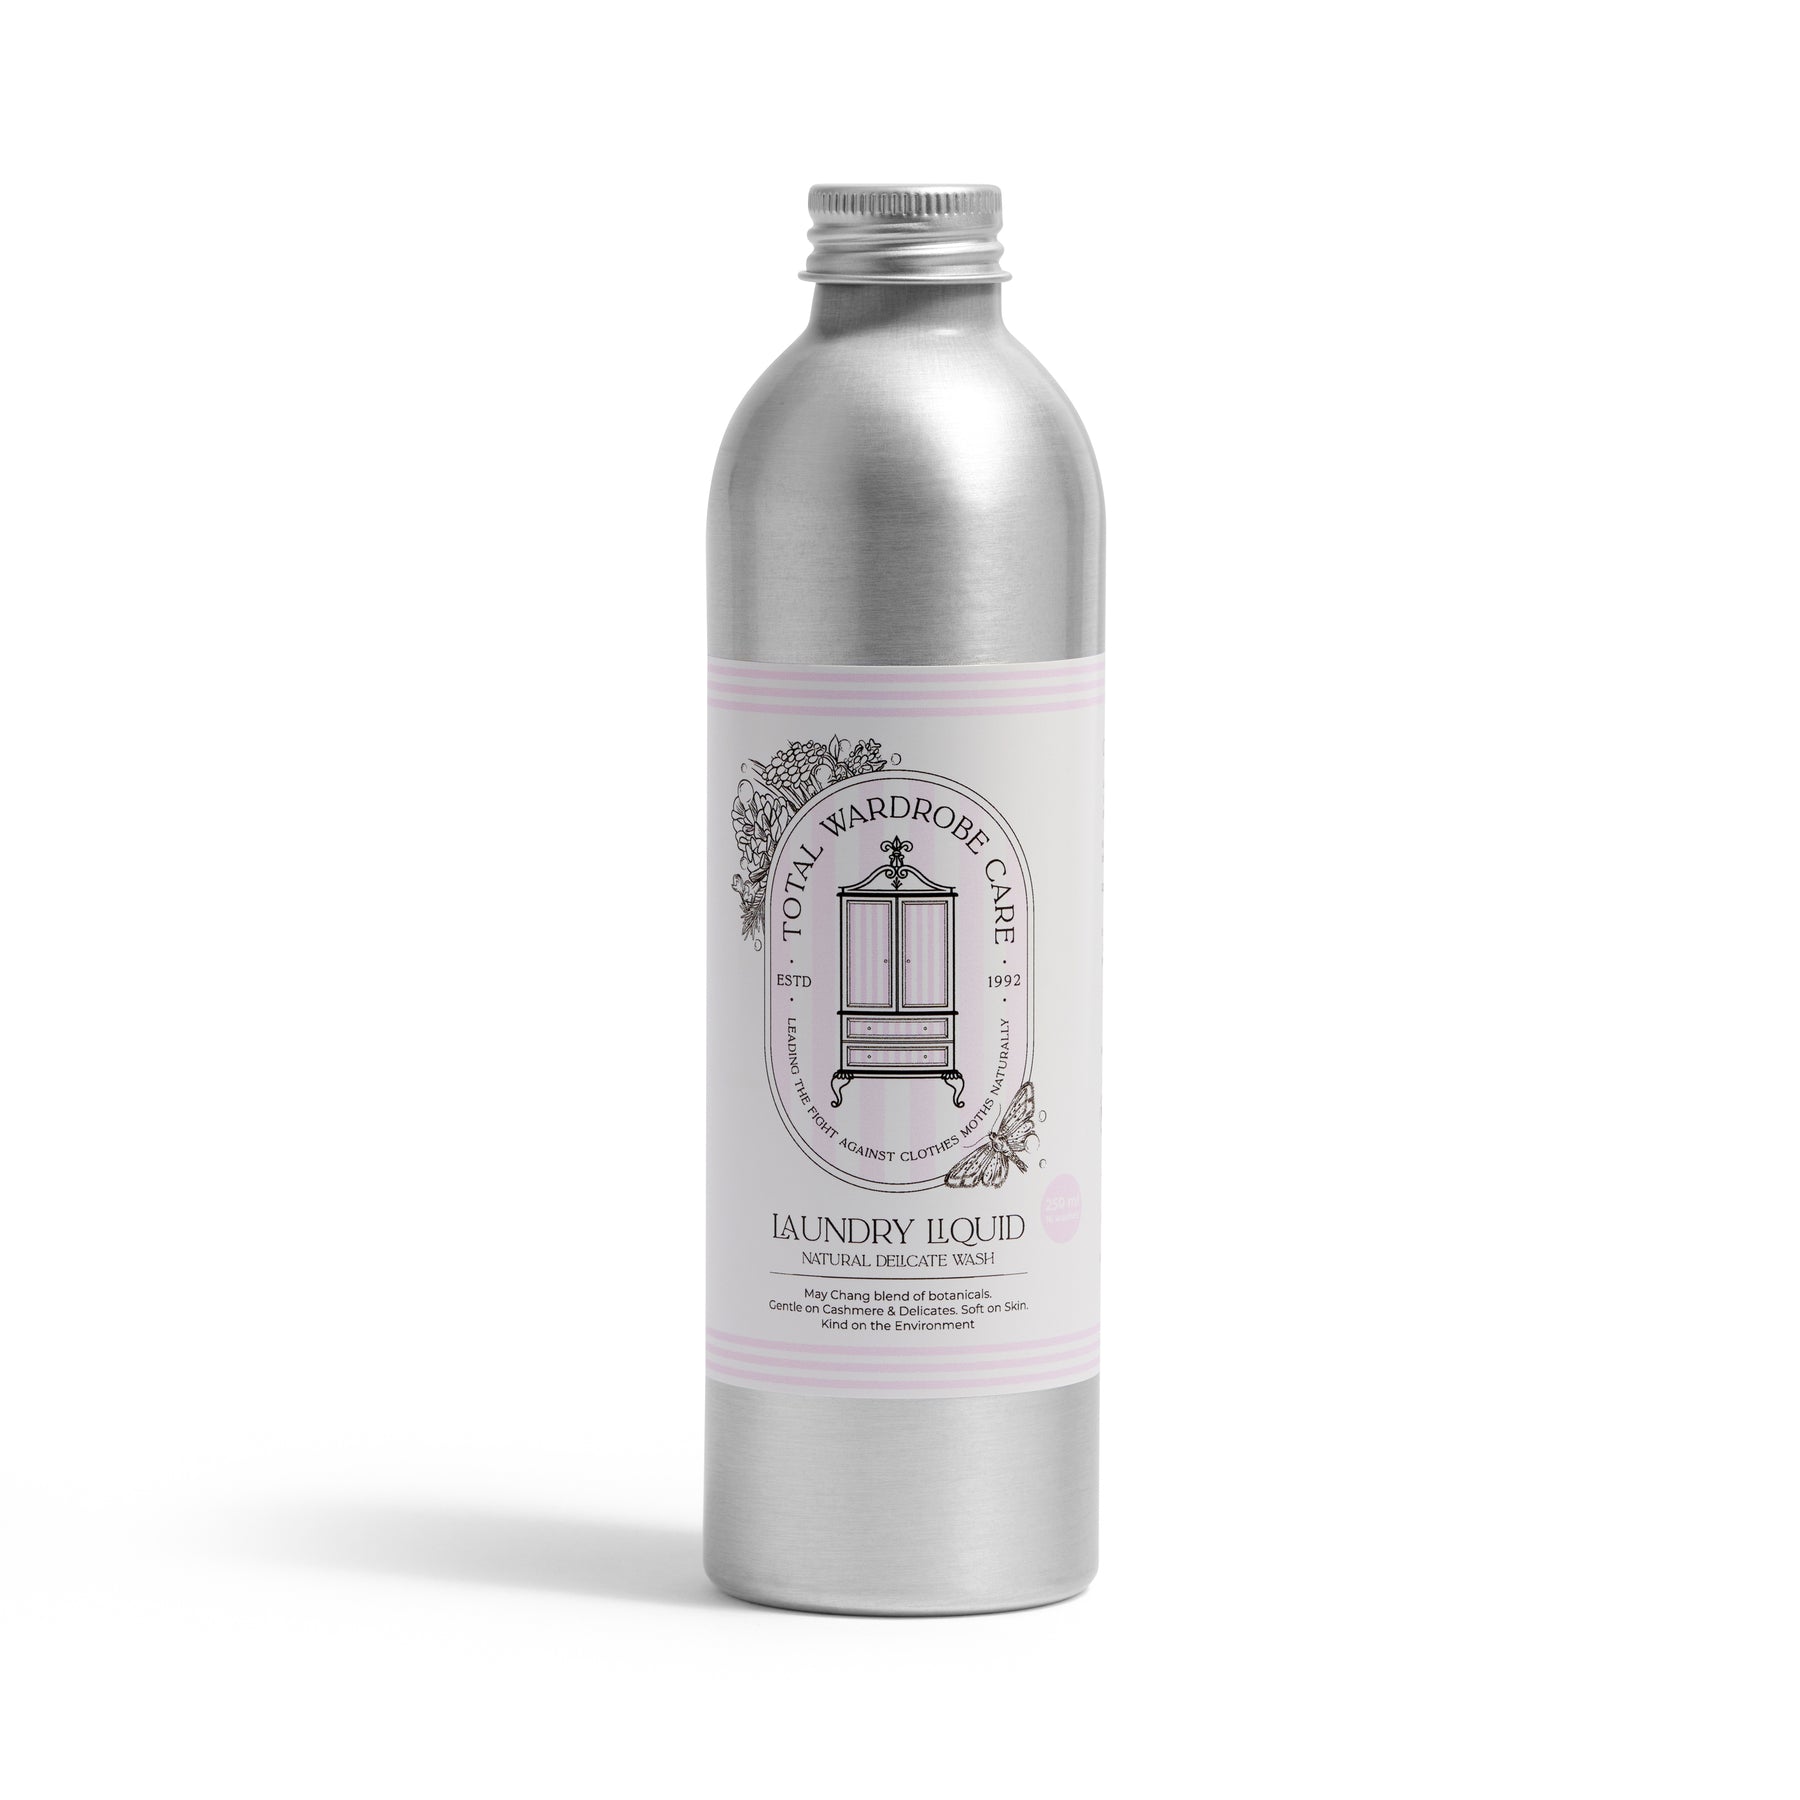 250ML aluminium bottle of laundry liquid on white background